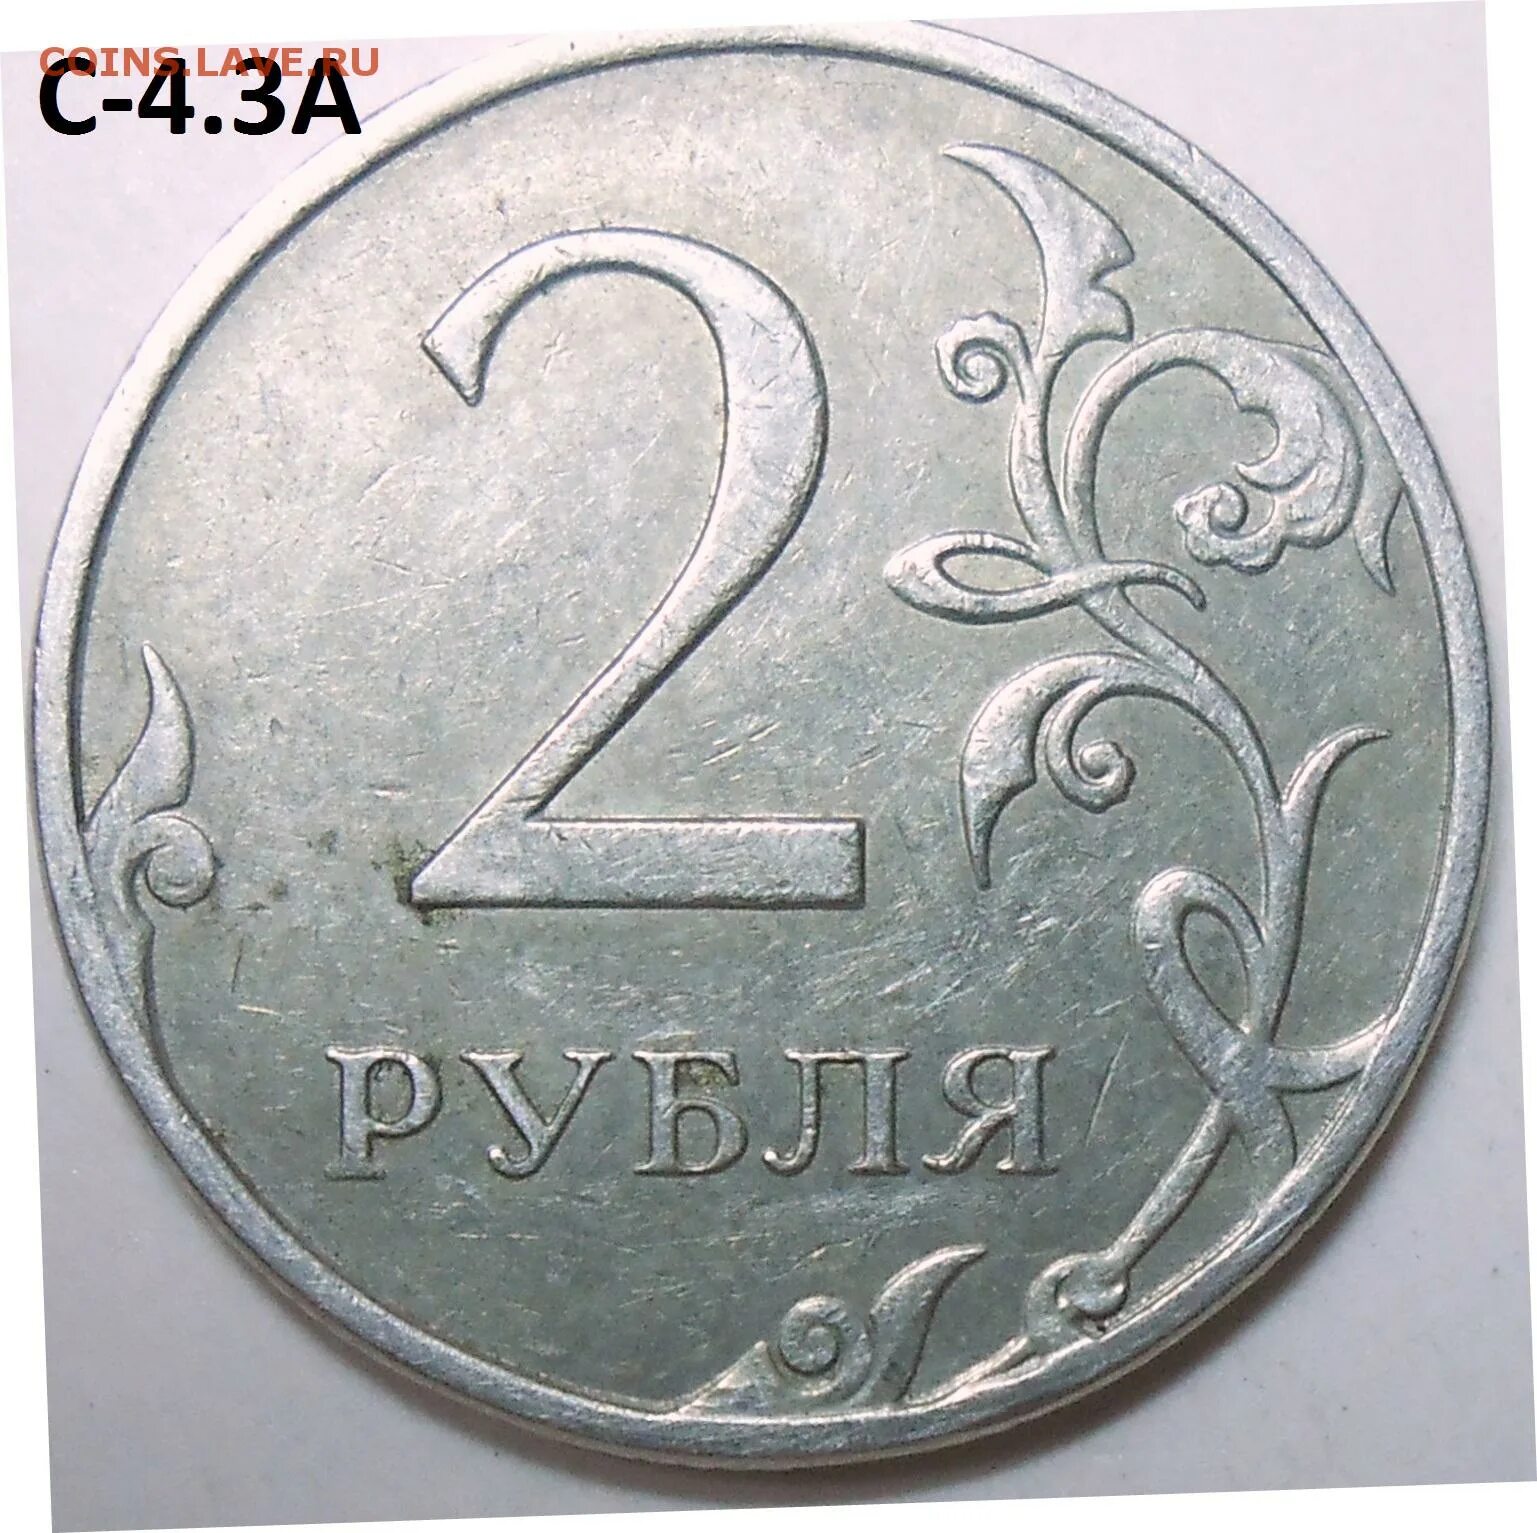 35 рублей килограмм. 2 Рубля 1997 ММД. 2 Руб 1997 ММД. 2 Рубля 1997 СПДМ золото. Редкий ли 2 рубль 1997.